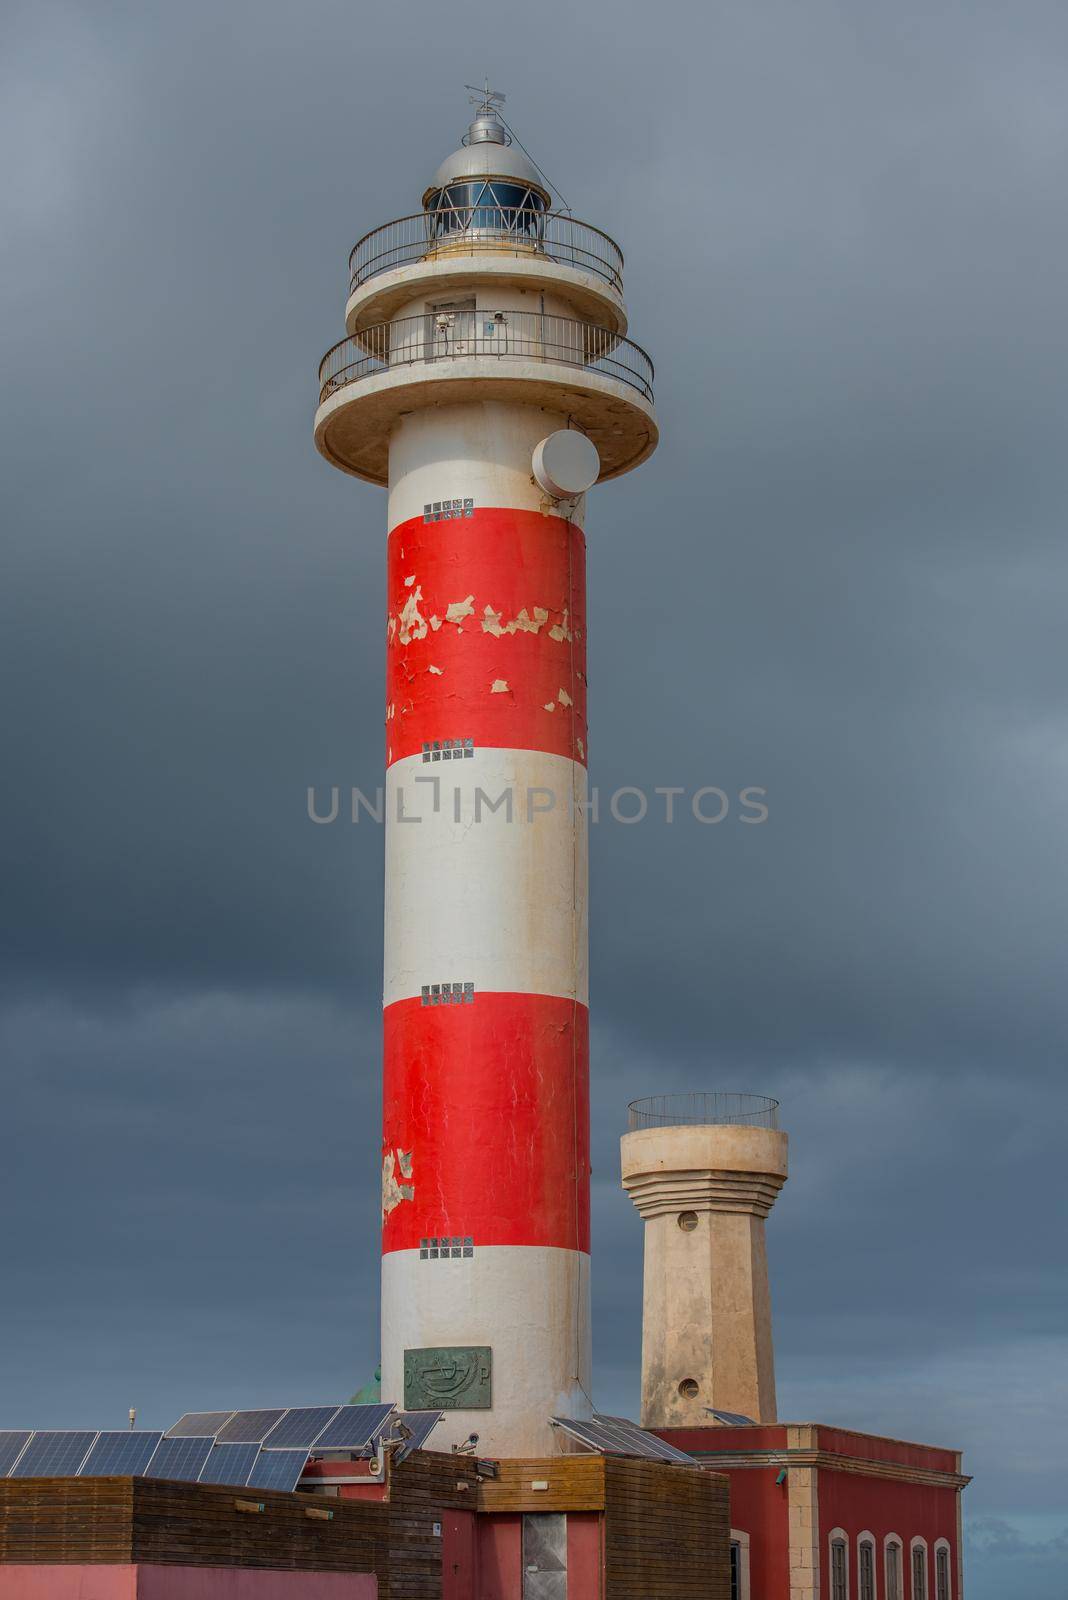 El Cotillo, Fuerteventura, Spain : 2020 October 2 : Sunset Lighthouse Faro el toston, El Cotillo, Fuerteventura, Spain in summer.